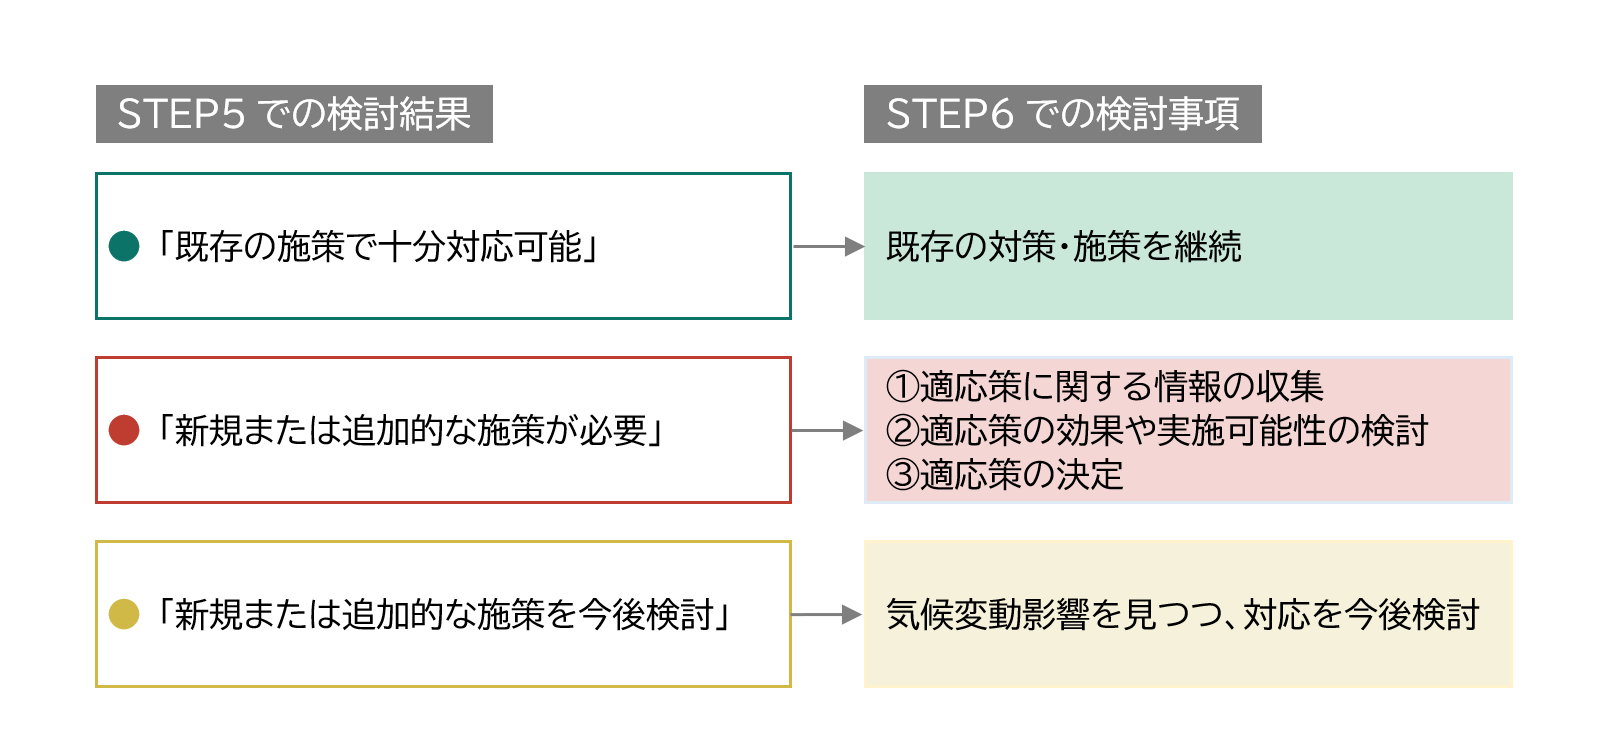 11　STEP6の実施フロー